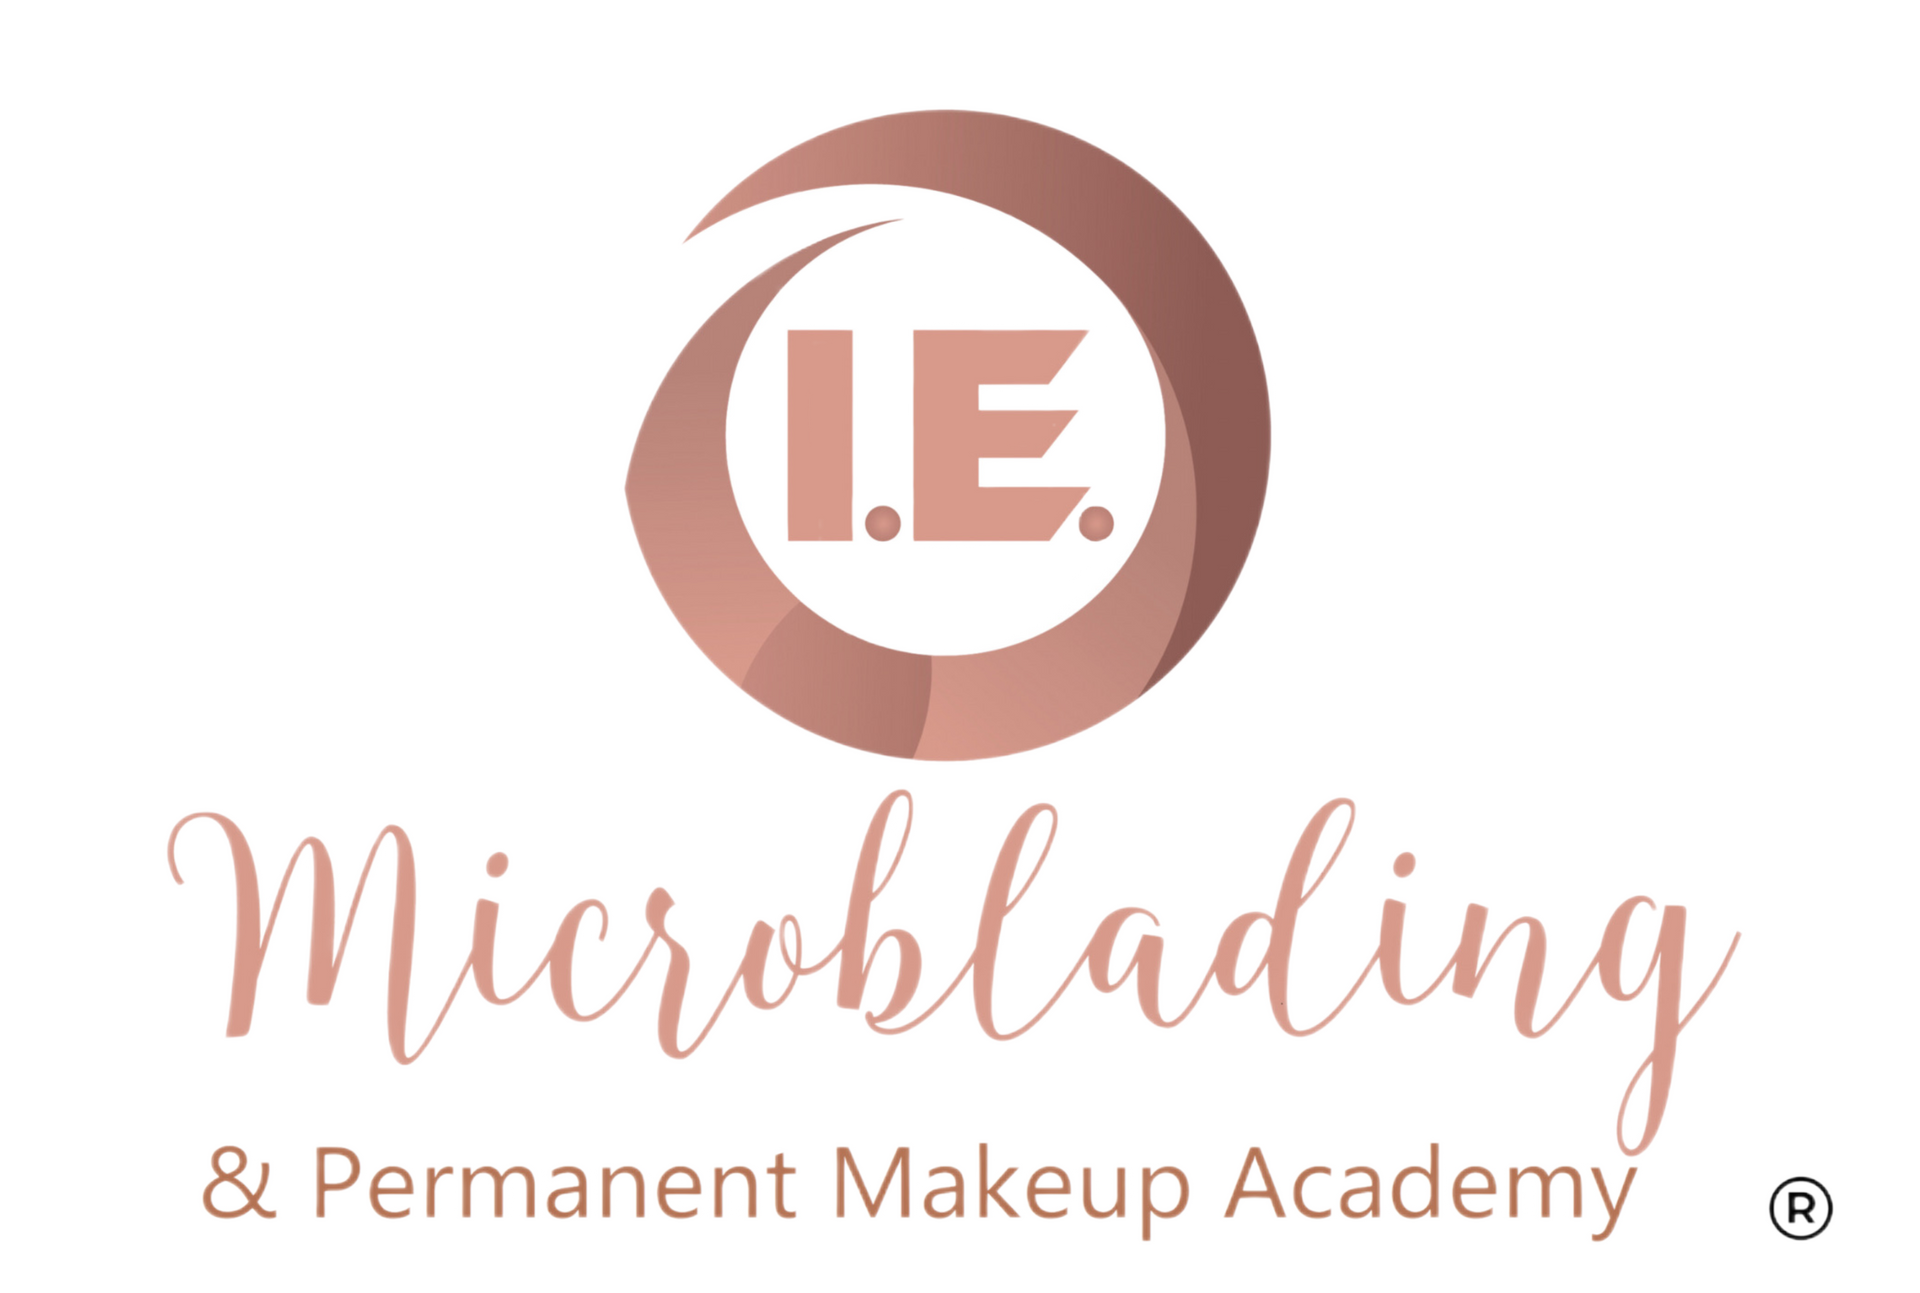 I.E. Microblading & Permanent Makeup Academy